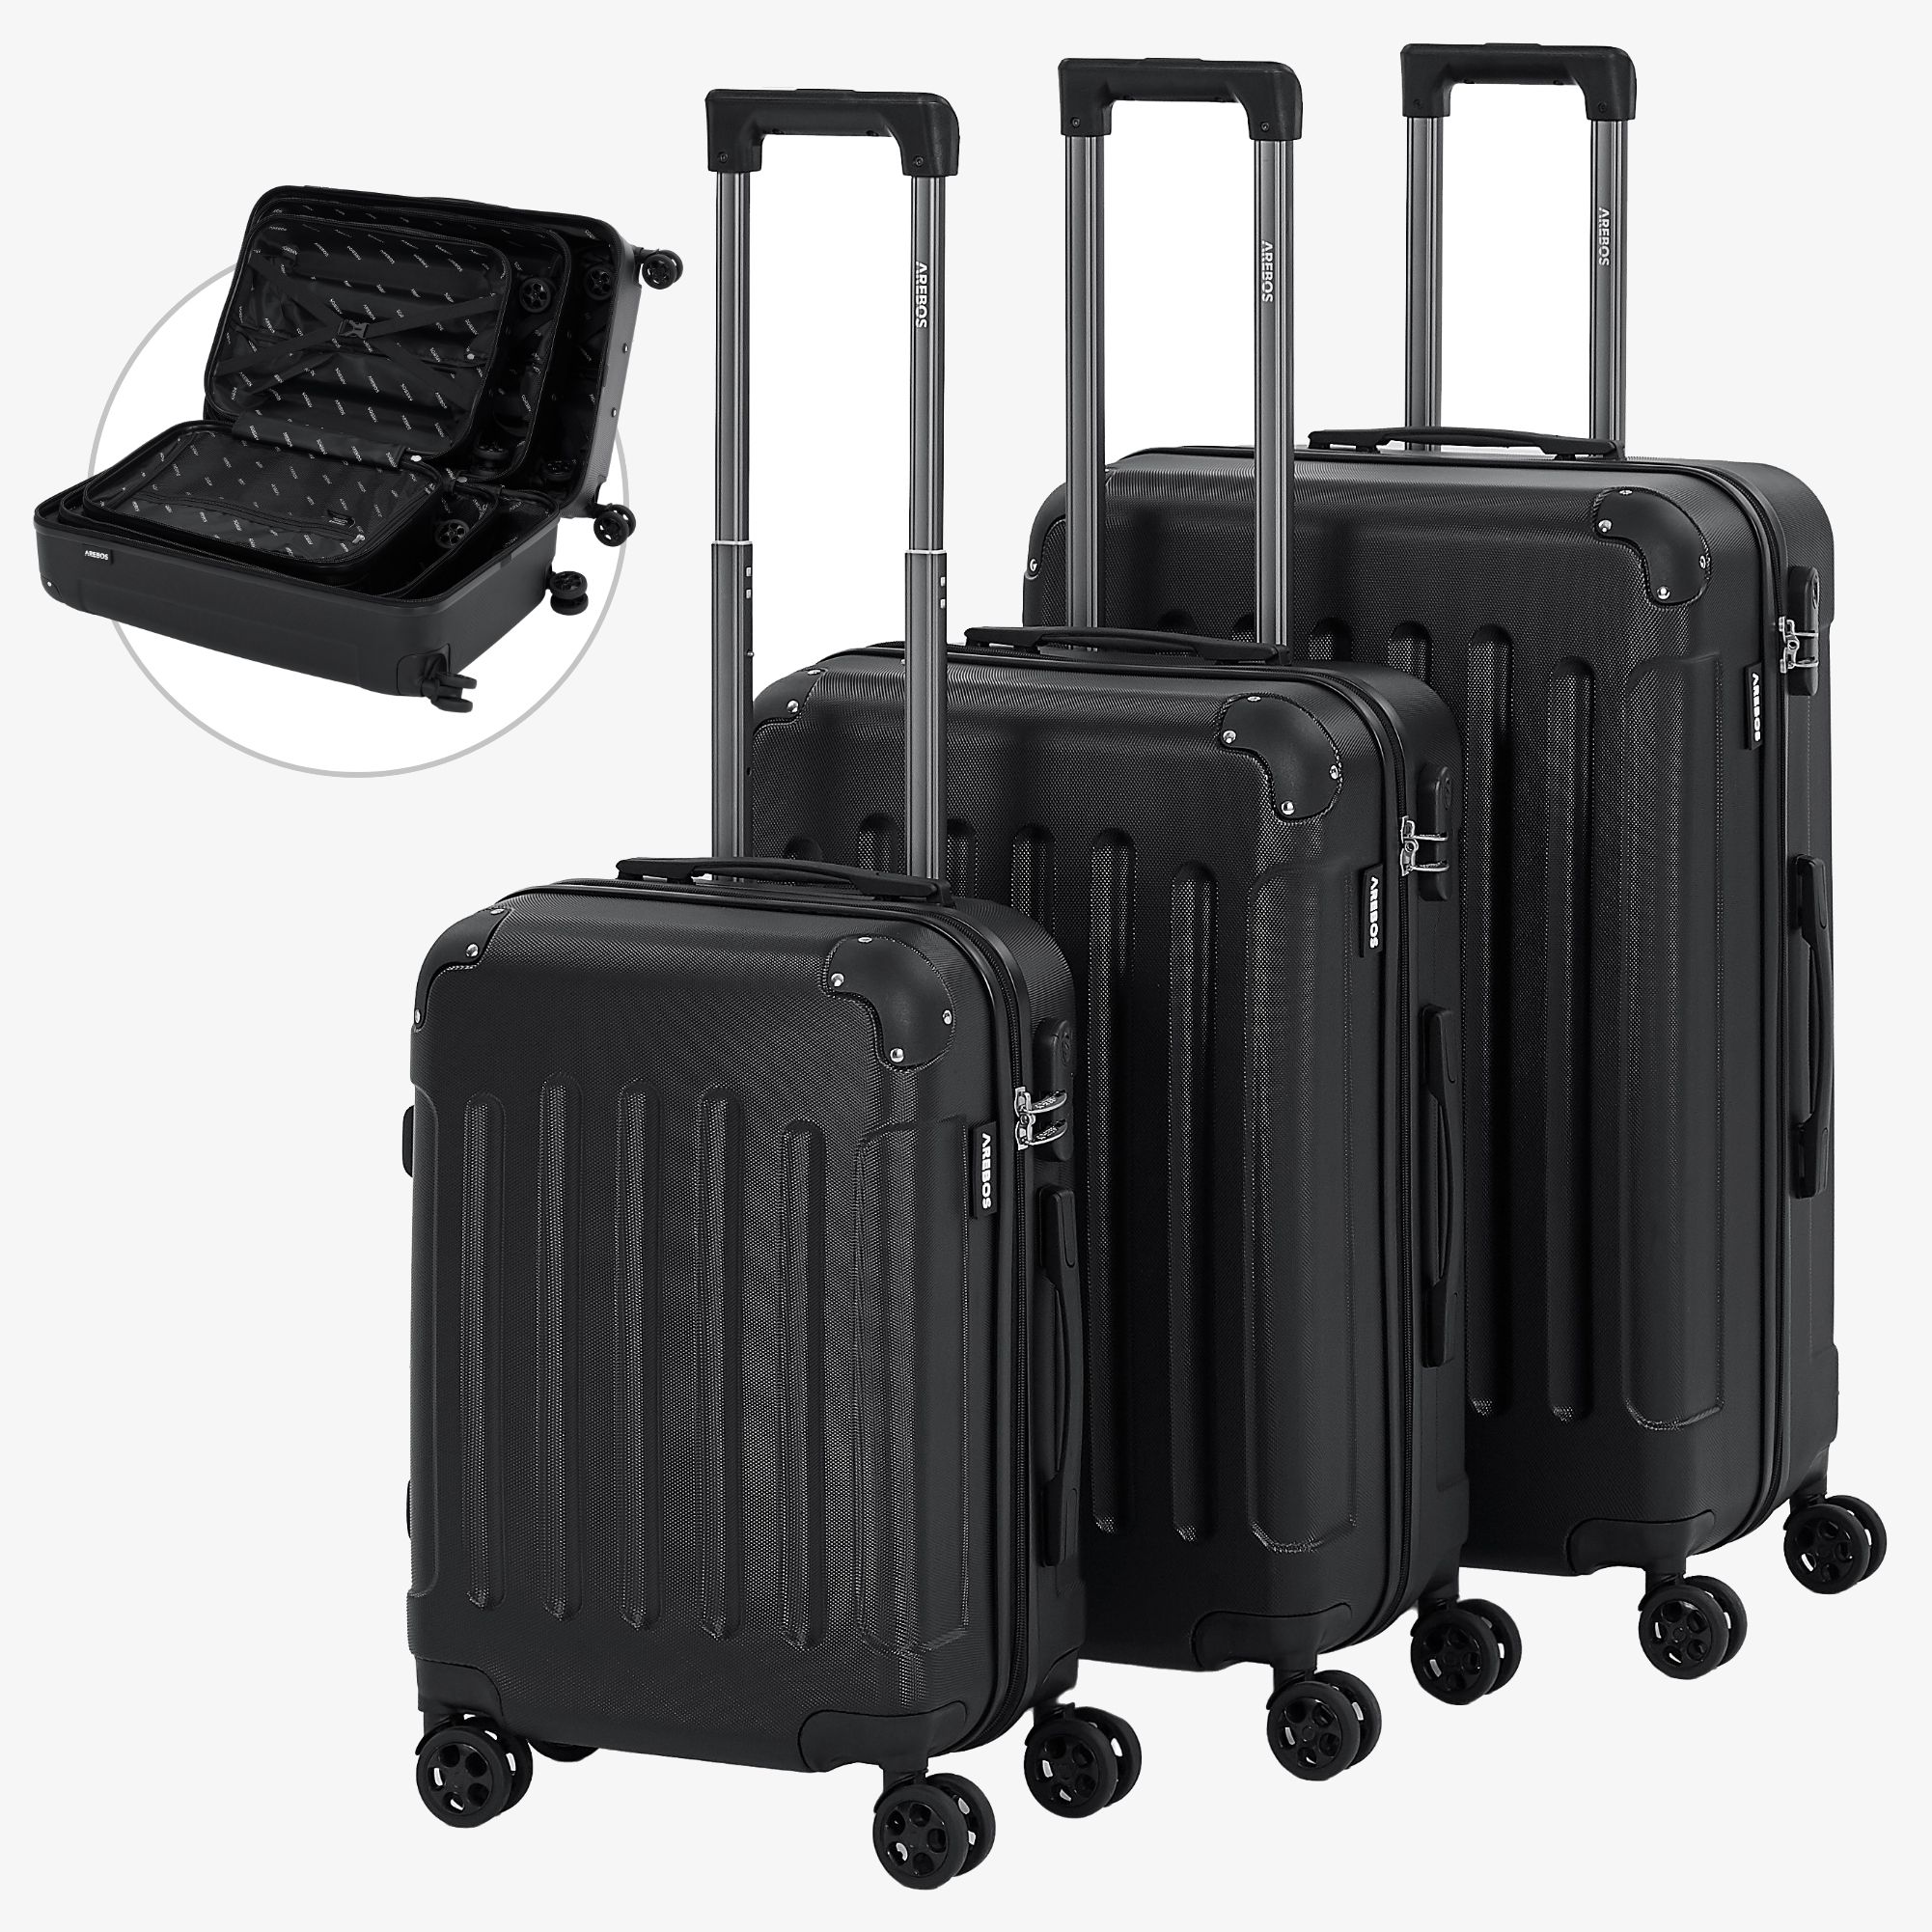 7 pcs Sac de rangement bagage voyage Organisateur valise voyage